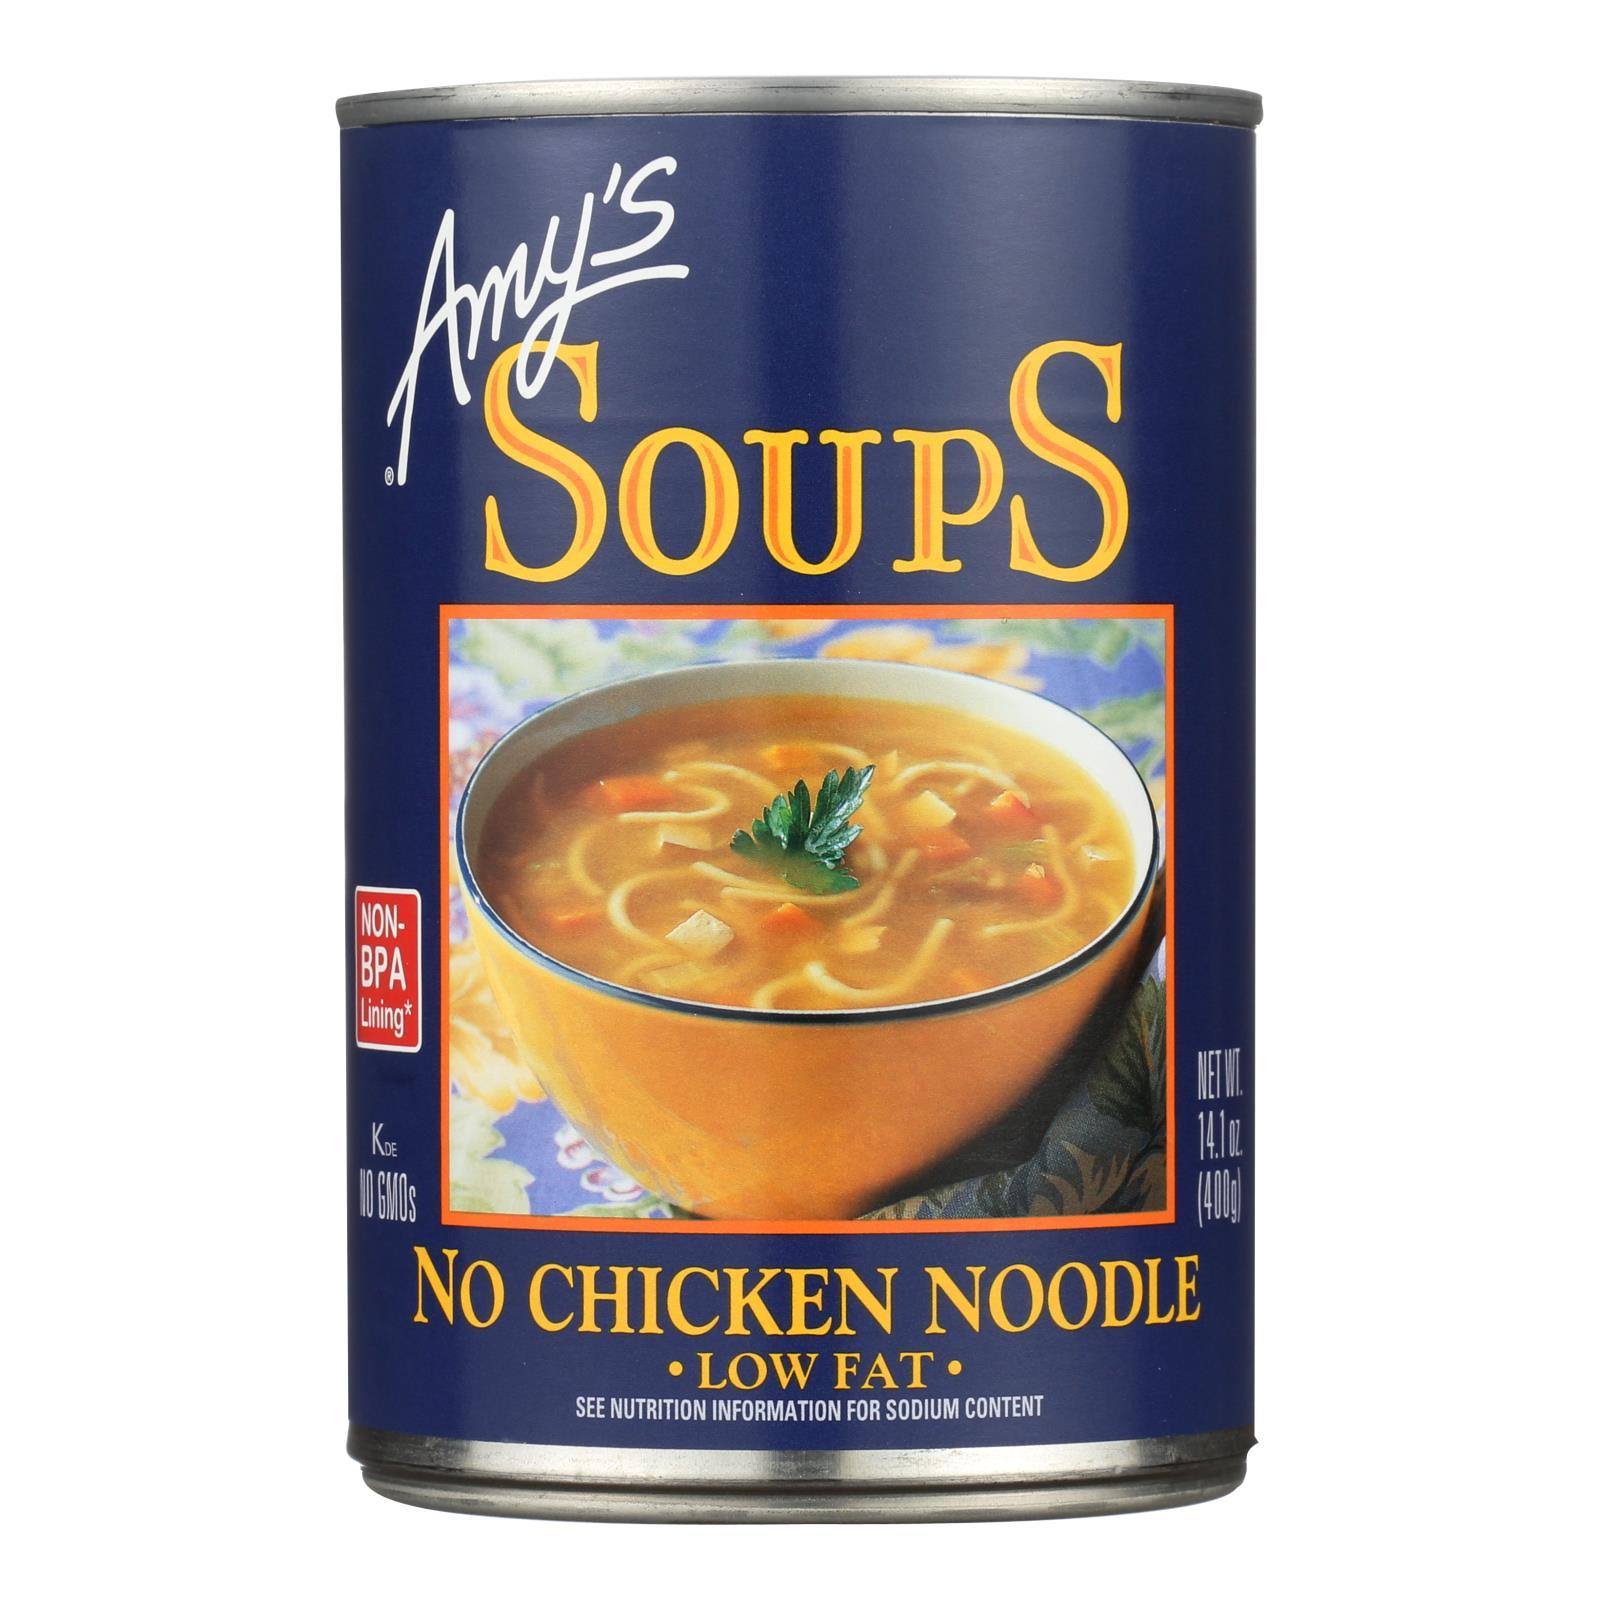 Amy's No Chicken Noodle Soups - 14.1 oz